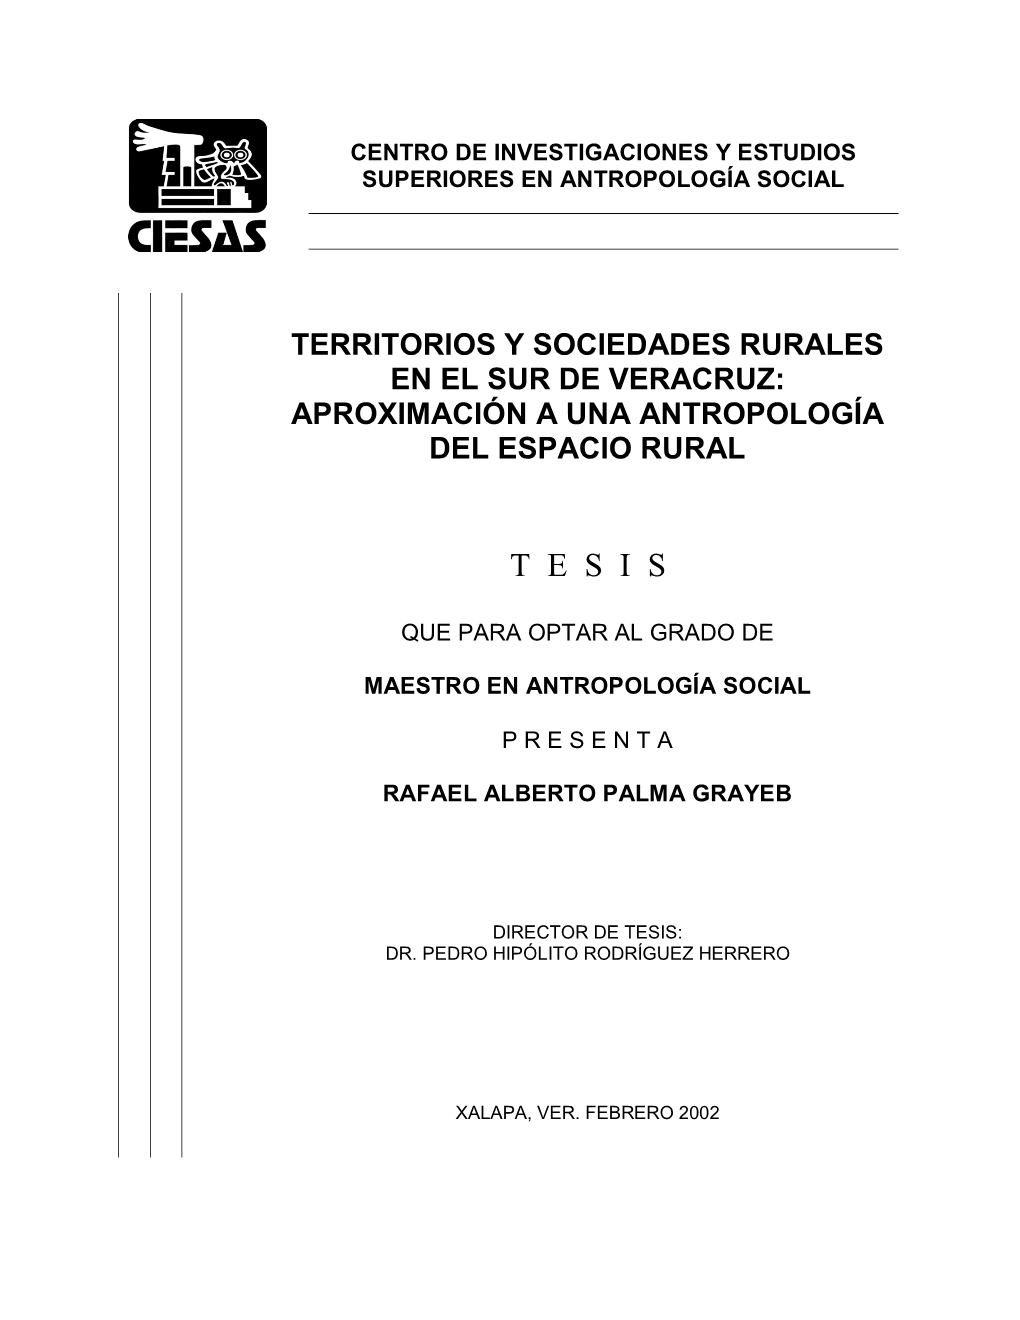 Territorios Y Sociedades Rurales En El Sur De Veracruz: Aproximación a Una Antropología Del Espacio Rural